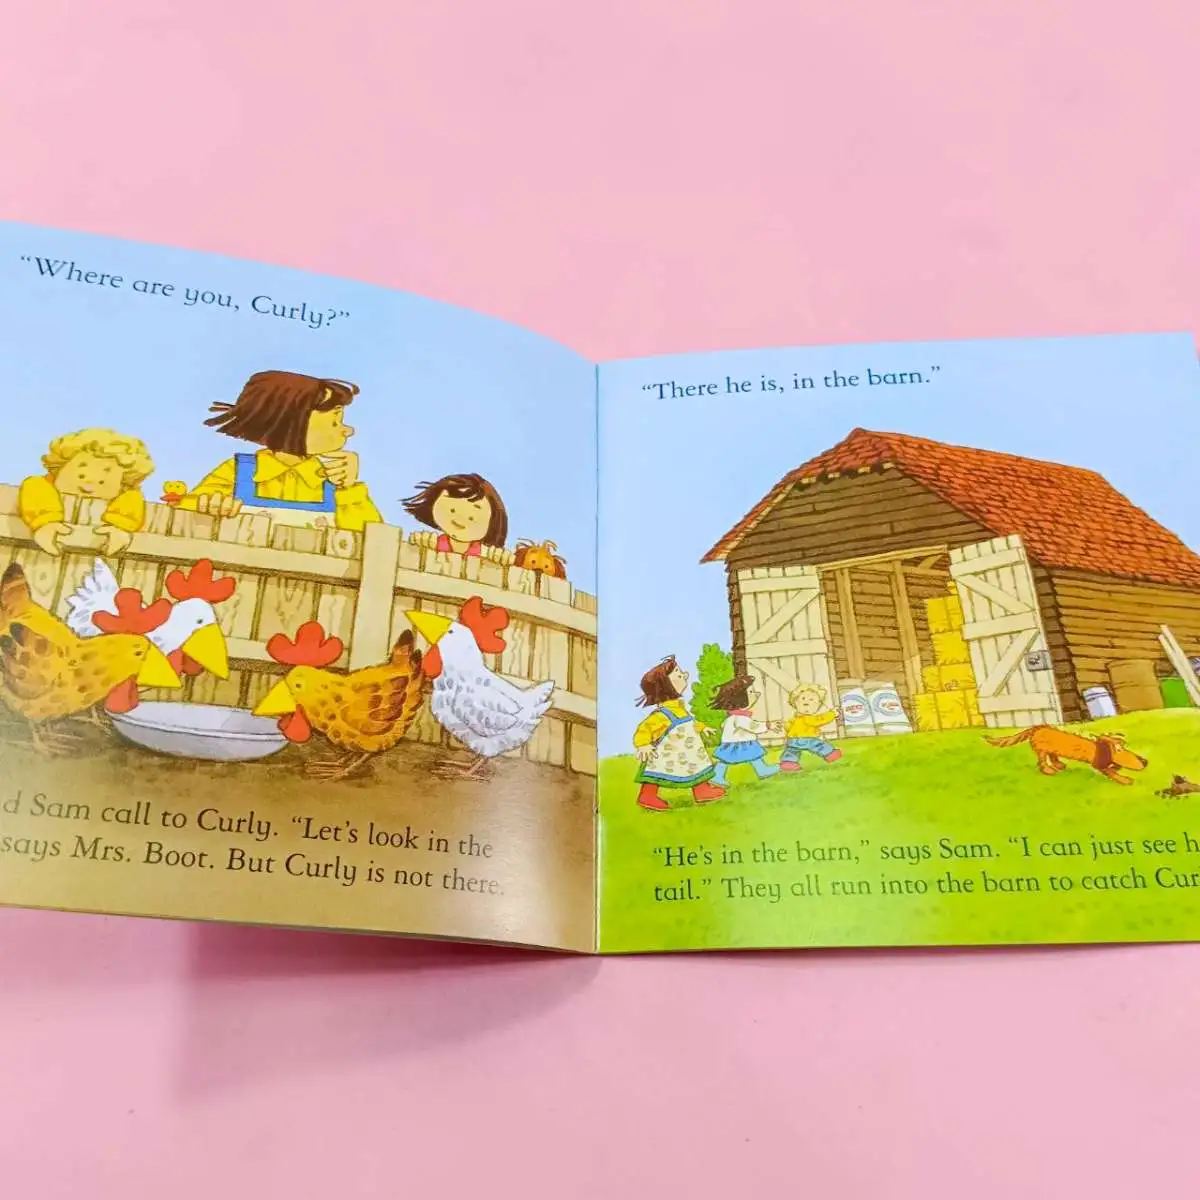 หนังสือเด็ก Pig Gets Lost: Usborne Farmyard Tales